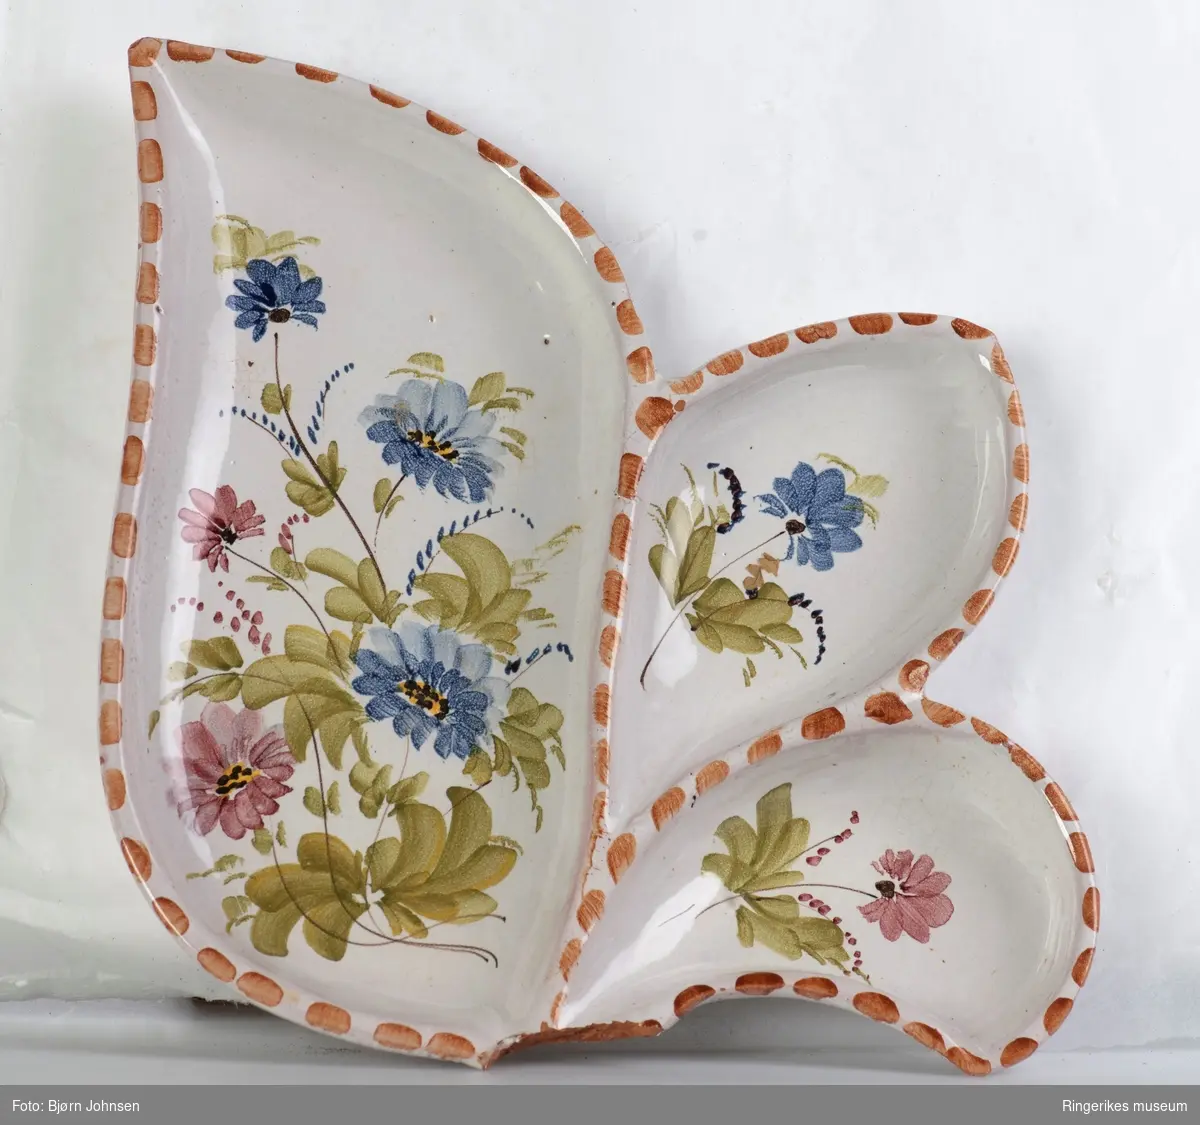 Keramikkfat formet som et blad, med ett stort og to små rom. Dekorert med håndmalte blomster. Stilken på bladet er knekt av og mangler. Antakelig produsert av Arol keramikk i Halden.